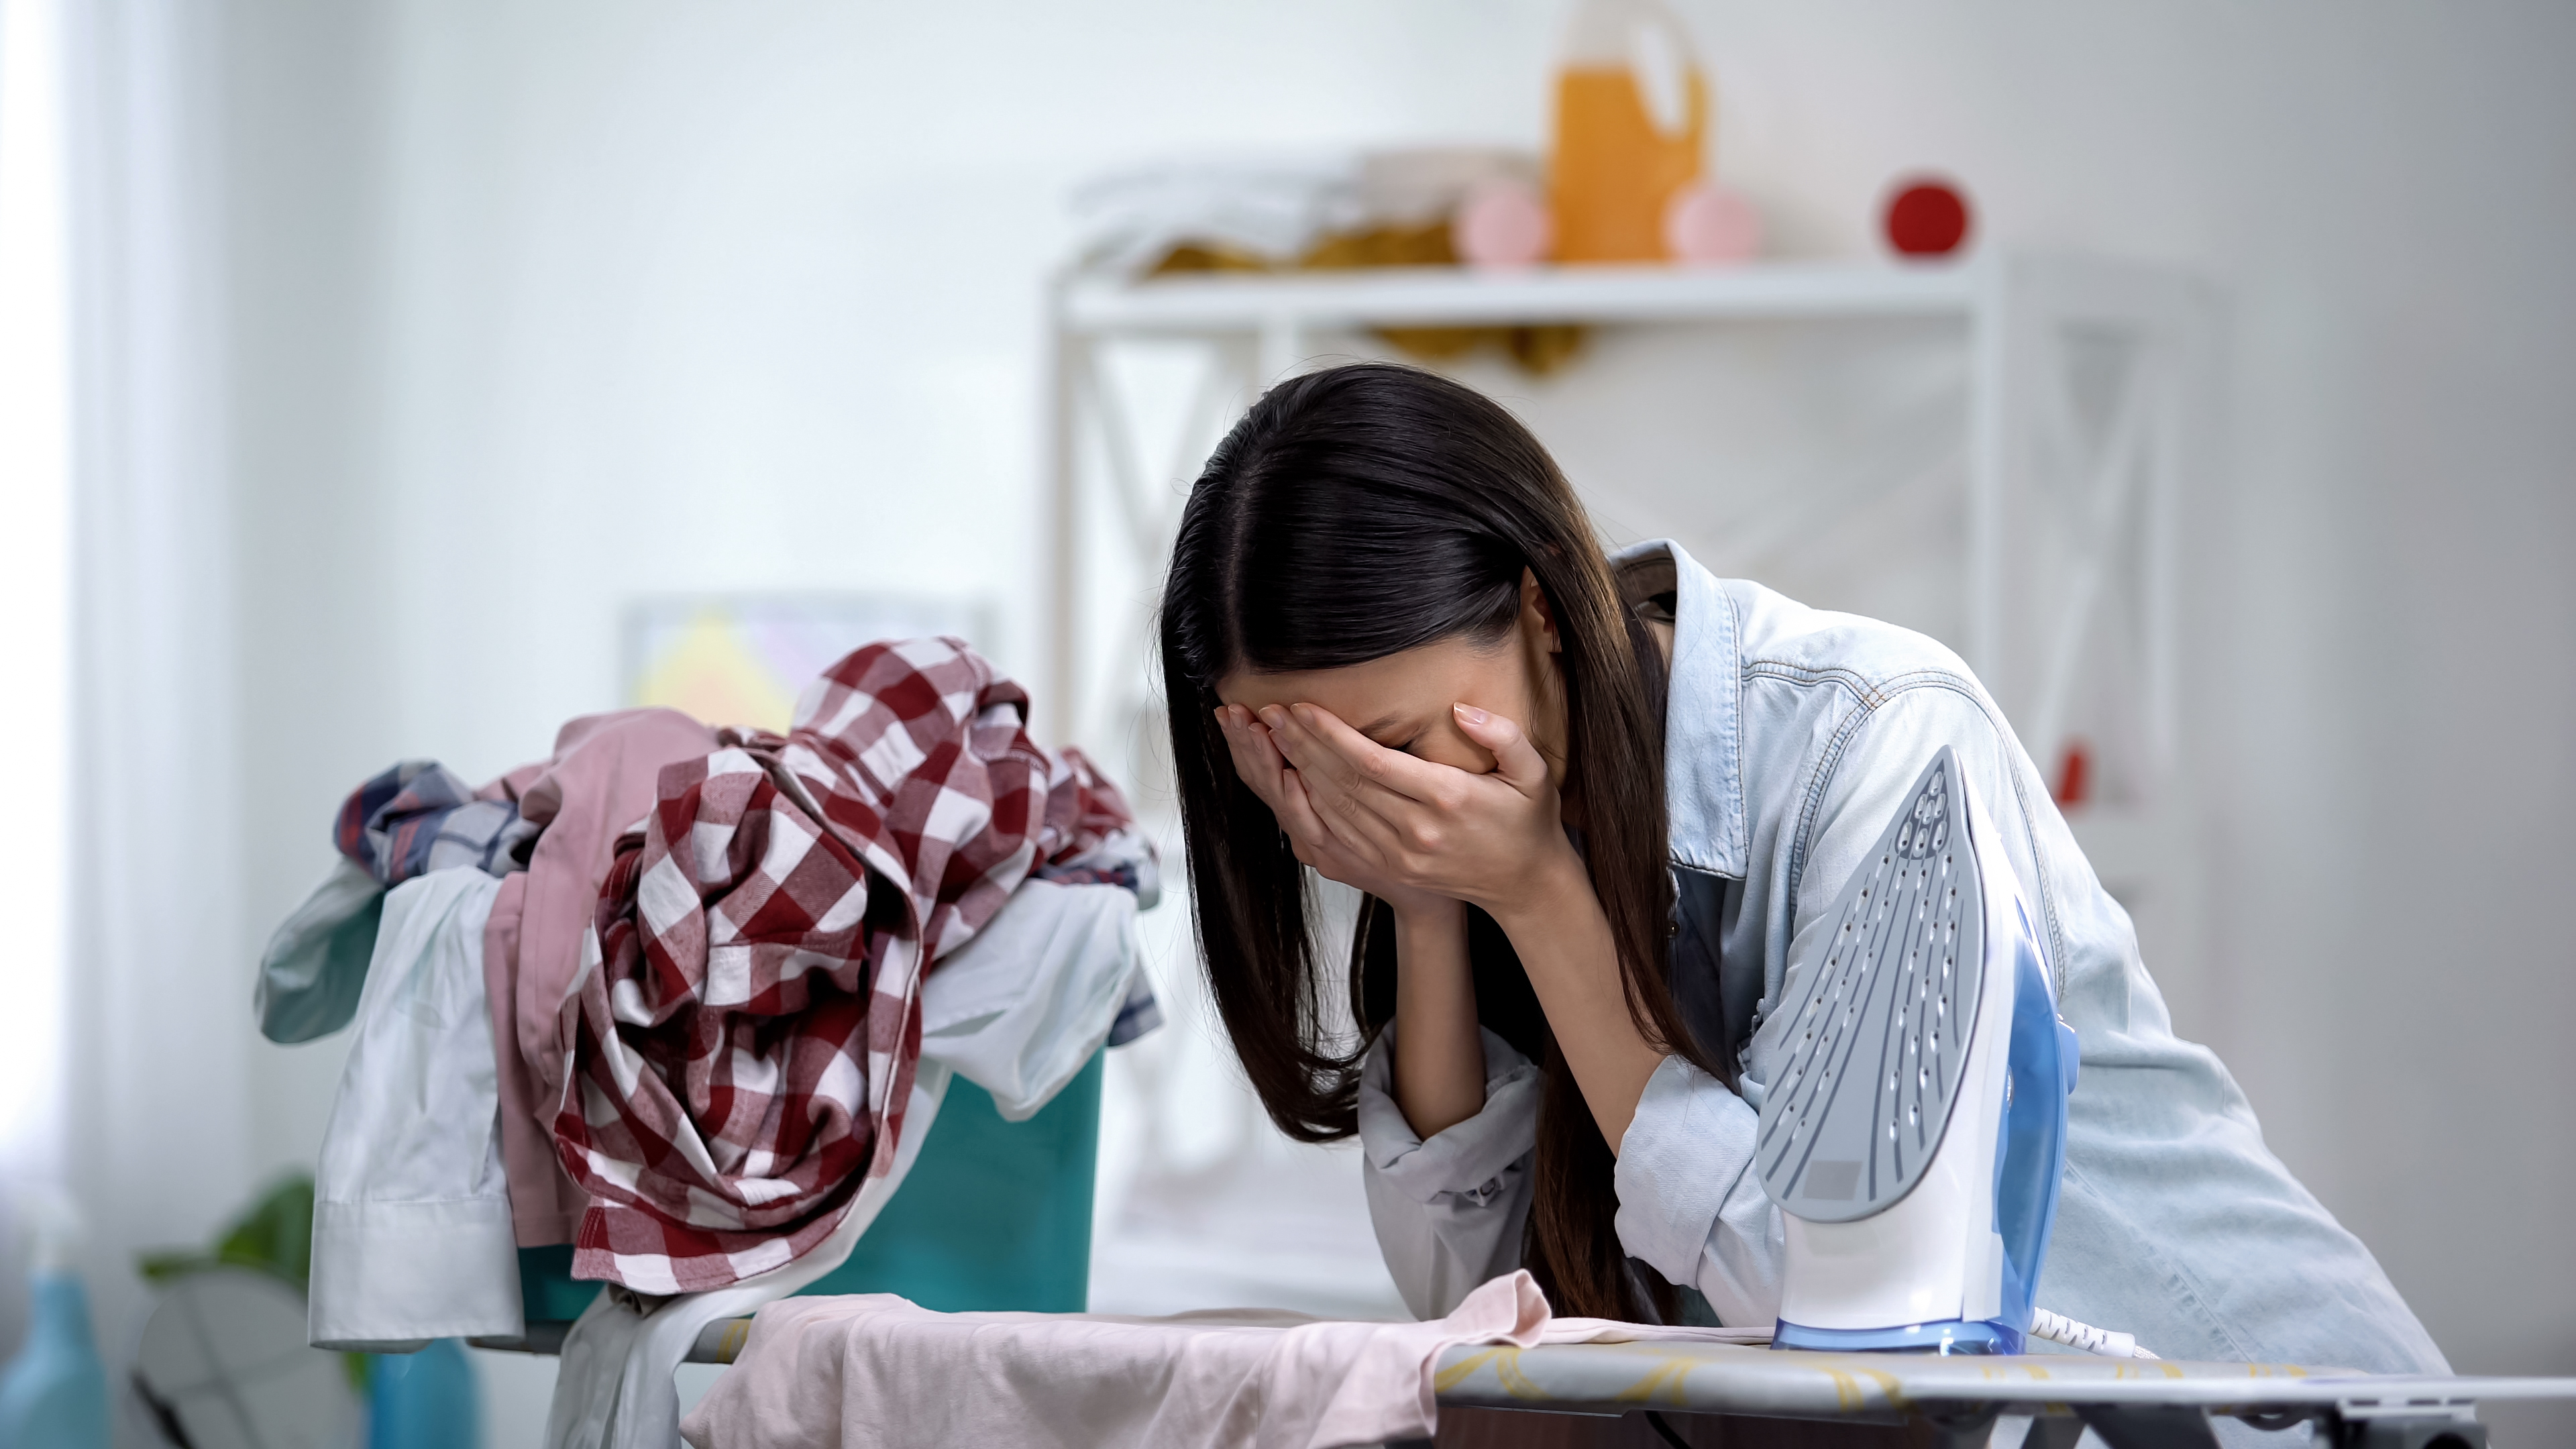 Une femme stressée est photographiée en train de pleurer en s'appuyant sur la planche à repasser | Source : Shutterstock